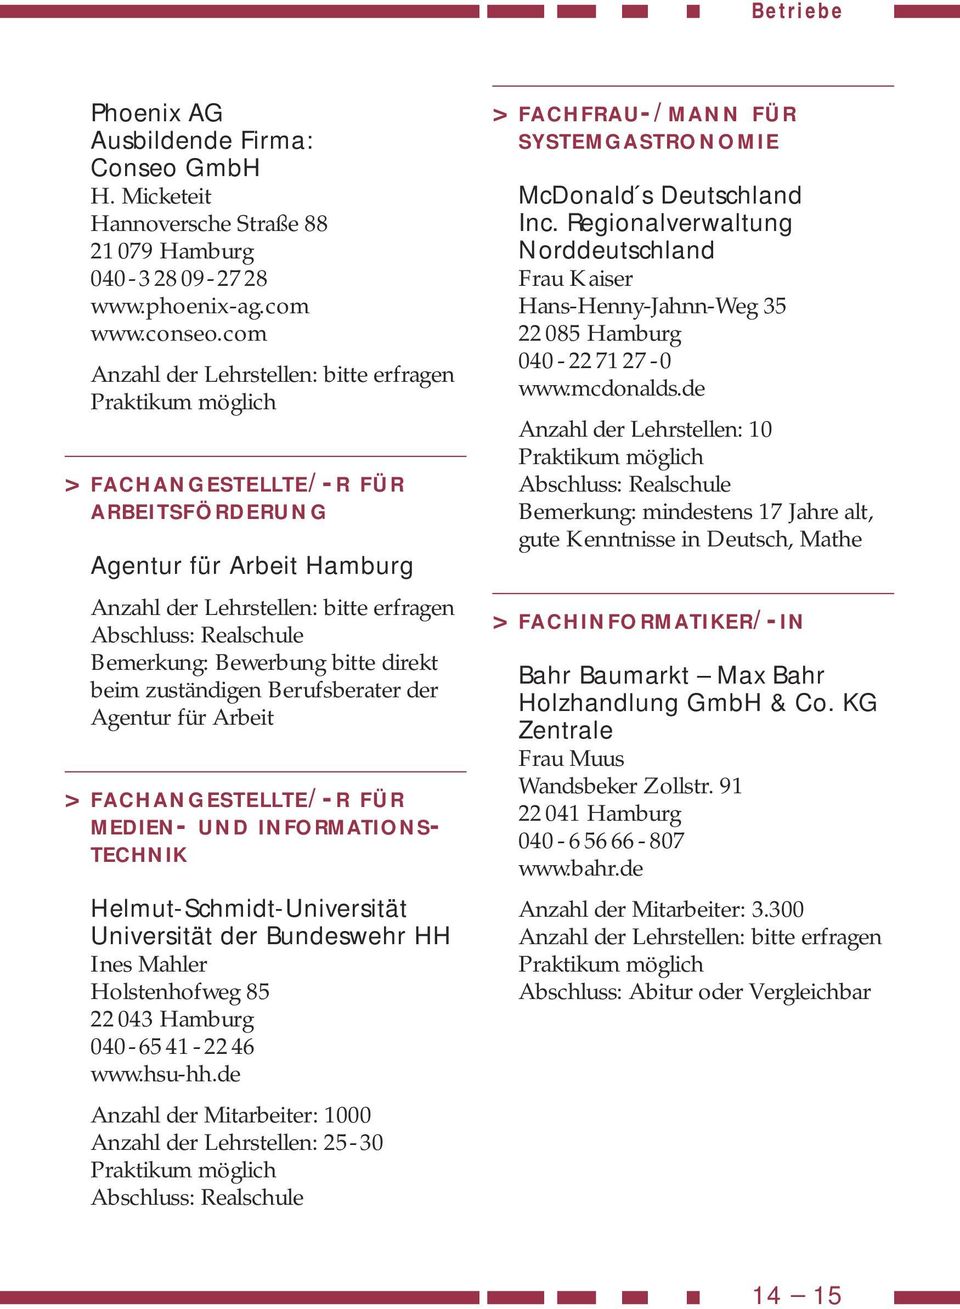 INFORMATIONS- TECHNIK Helmut-Schmidt-Universität Universität der Bundeswehr HH Ines Mahler Holstenhofweg 85 22 043 Hamburg 040-6541-2246 www.hsu-hh.